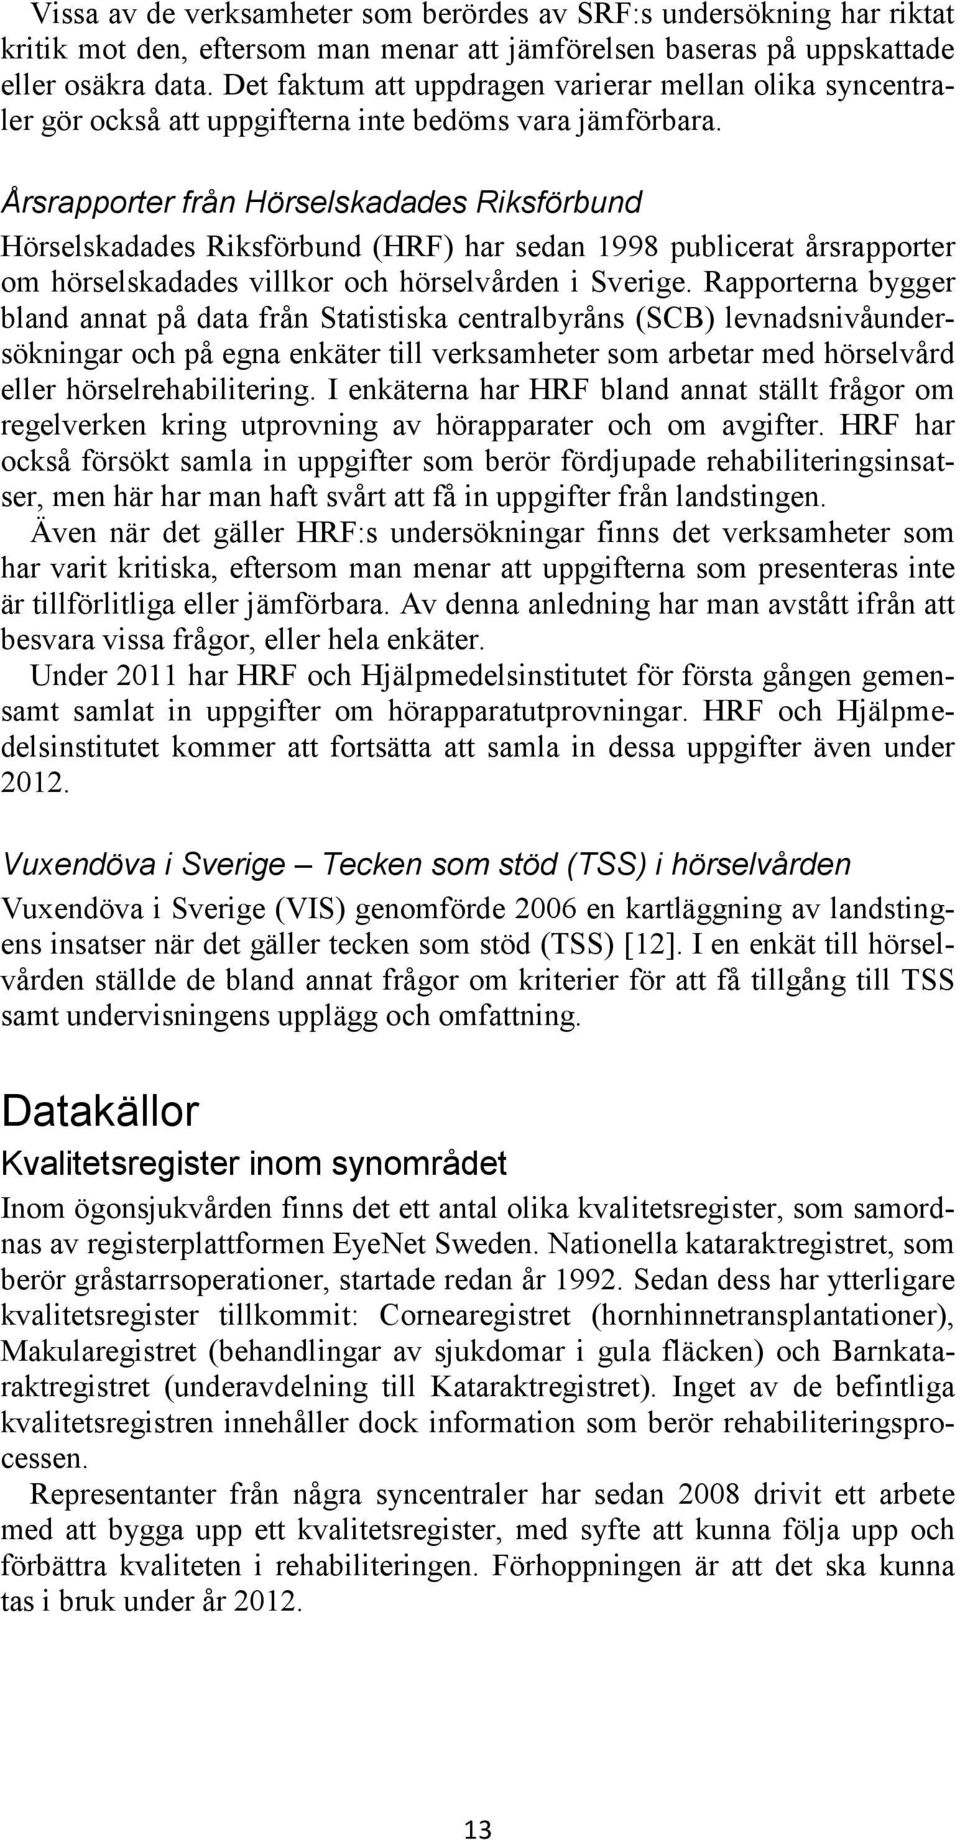 Årsrapporter från Hörselskadades Riksförbund Hörselskadades Riksförbund (HRF) har sedan 1998 publicerat årsrapporter om hörselskadades villkor och hörselvården i Sverige.